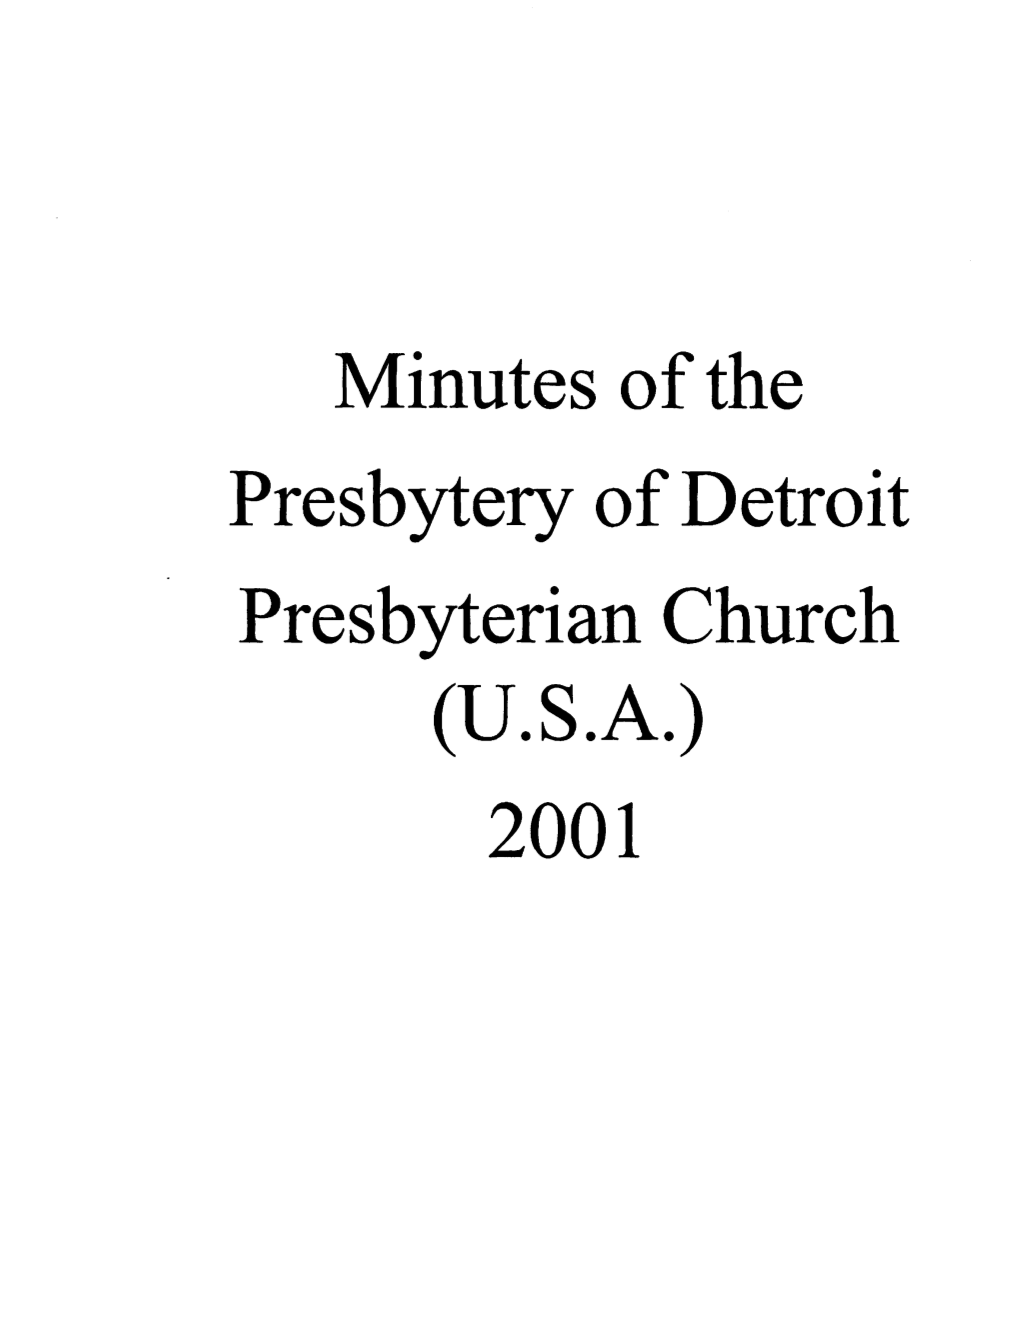 Minutes of the Presbytery of Detroit Presbyterian Church (U.S.A.) 2001 1